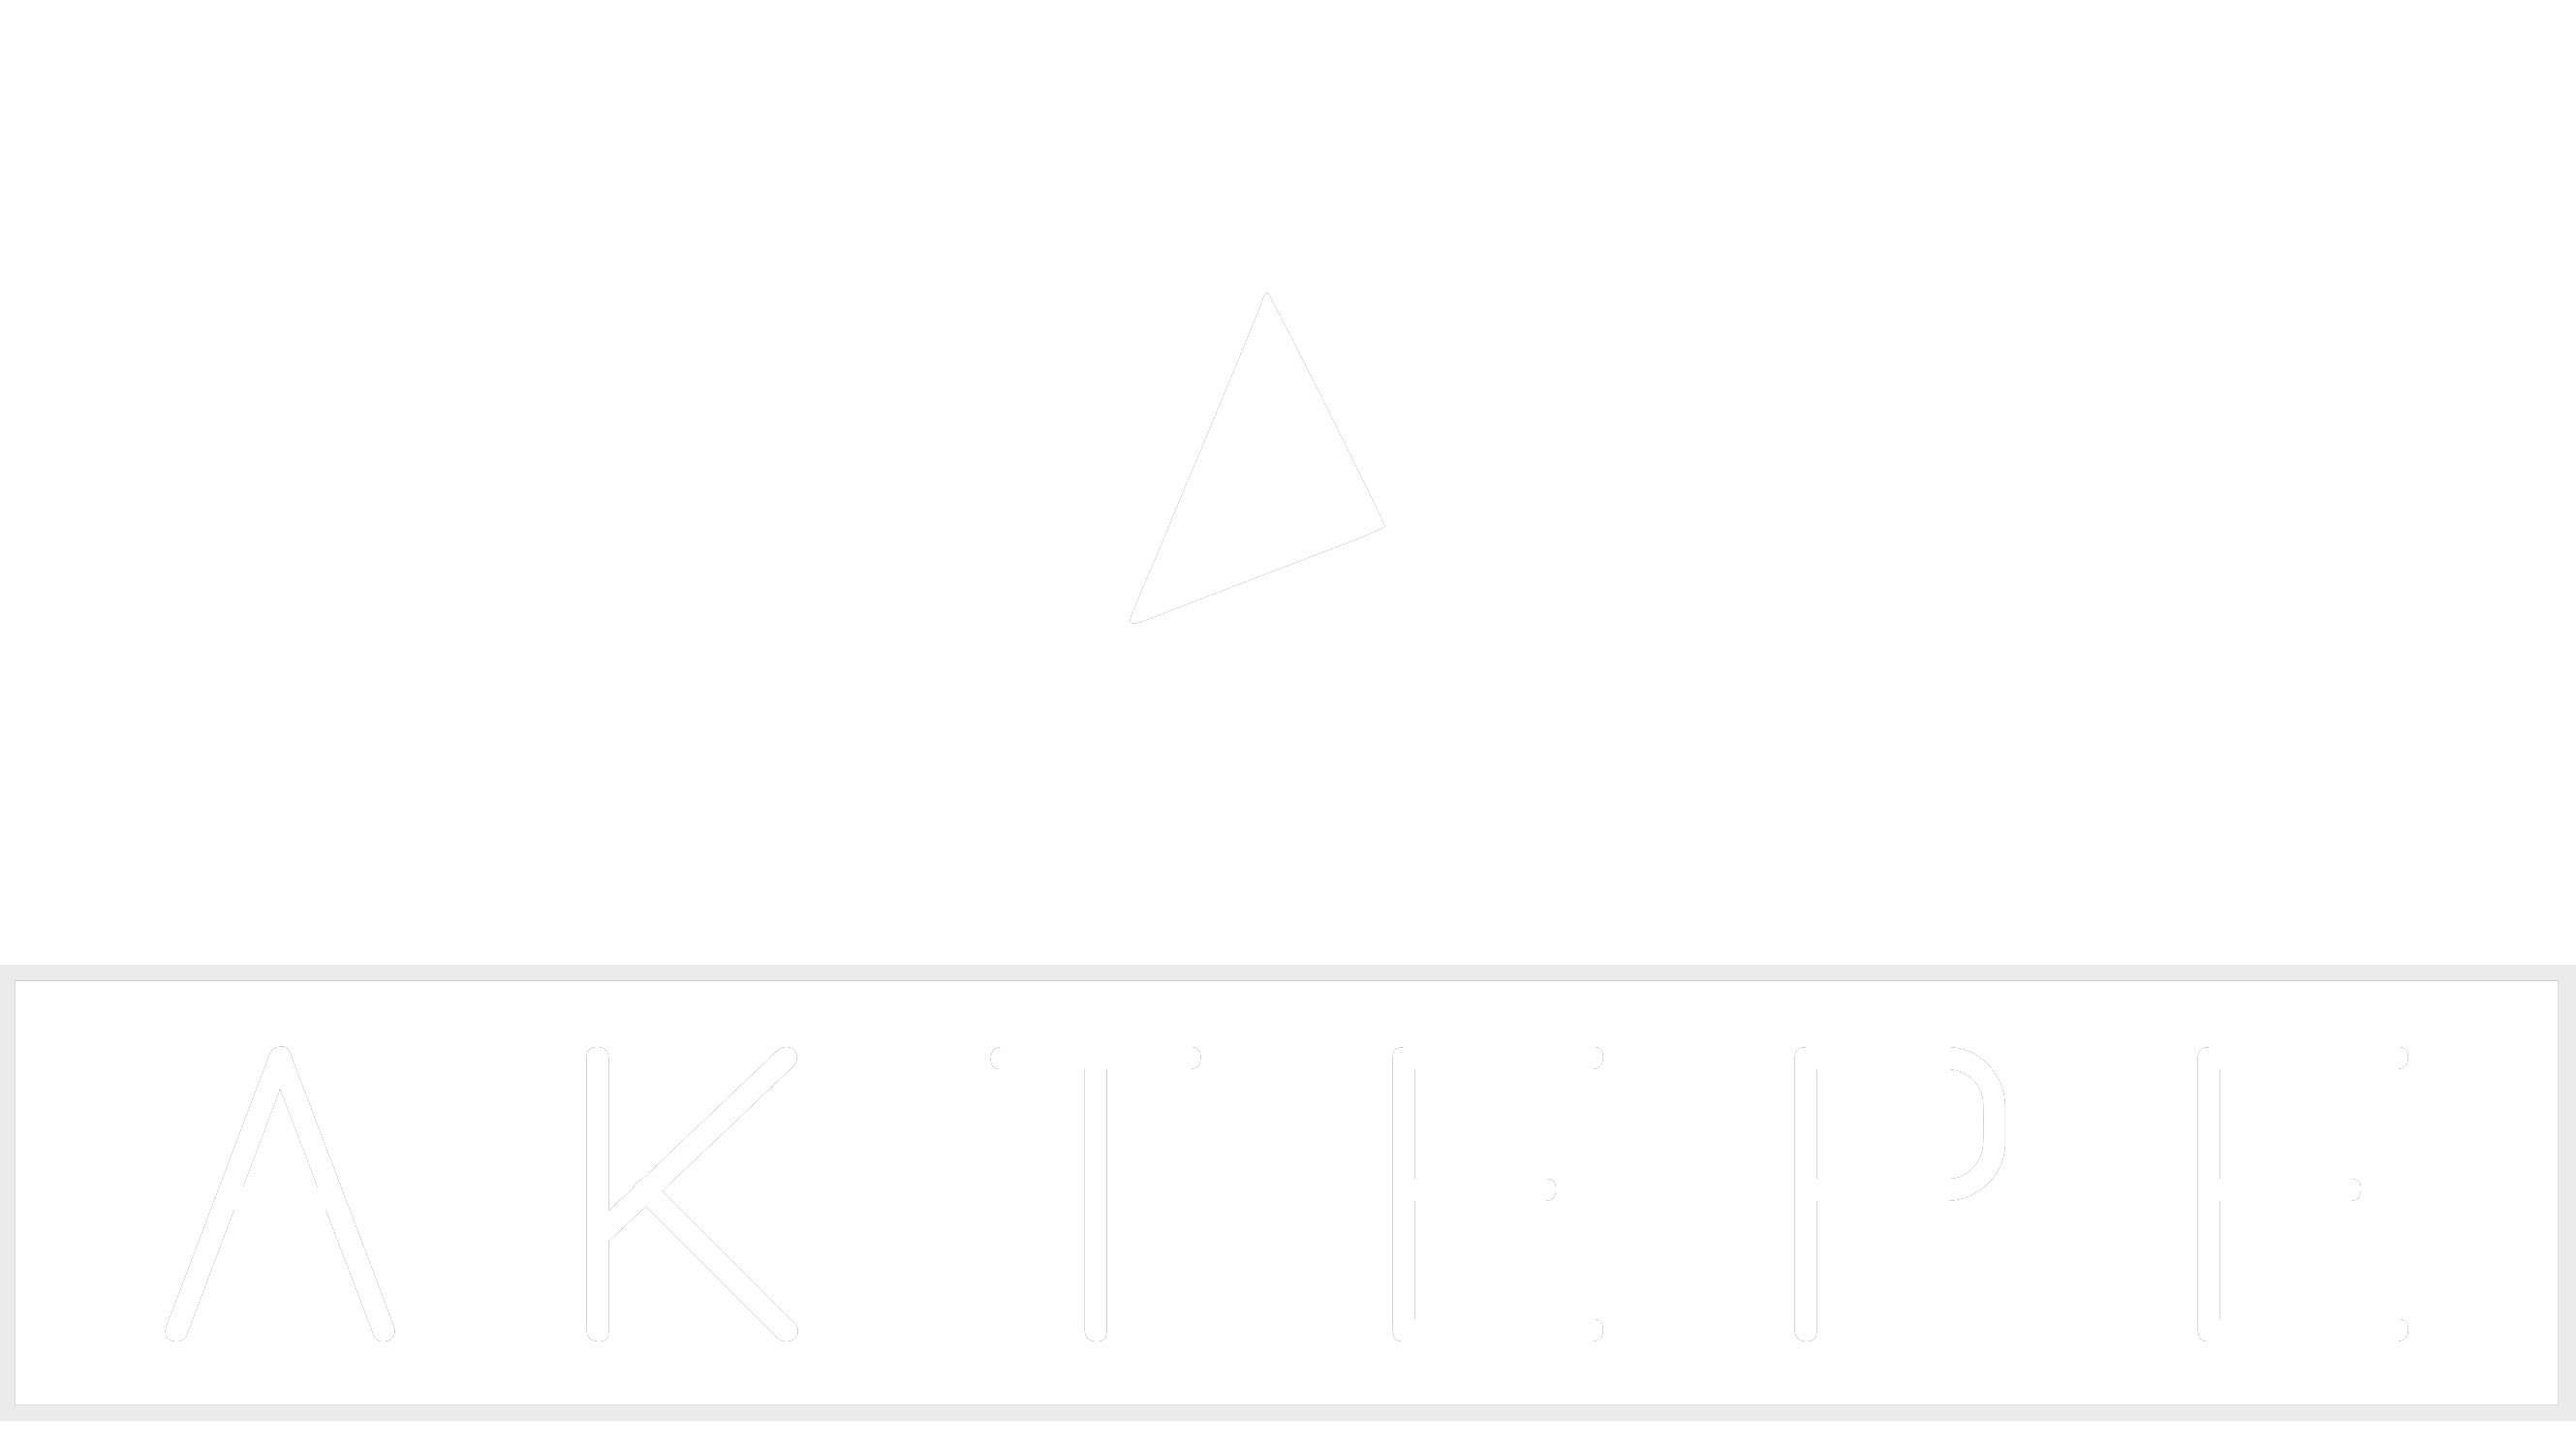 Hilux - Aktepe Shop - Oto Müzik Görüntü Navigasyon Sistemleri ve Teyp Çerçevesi Satış Merkezi